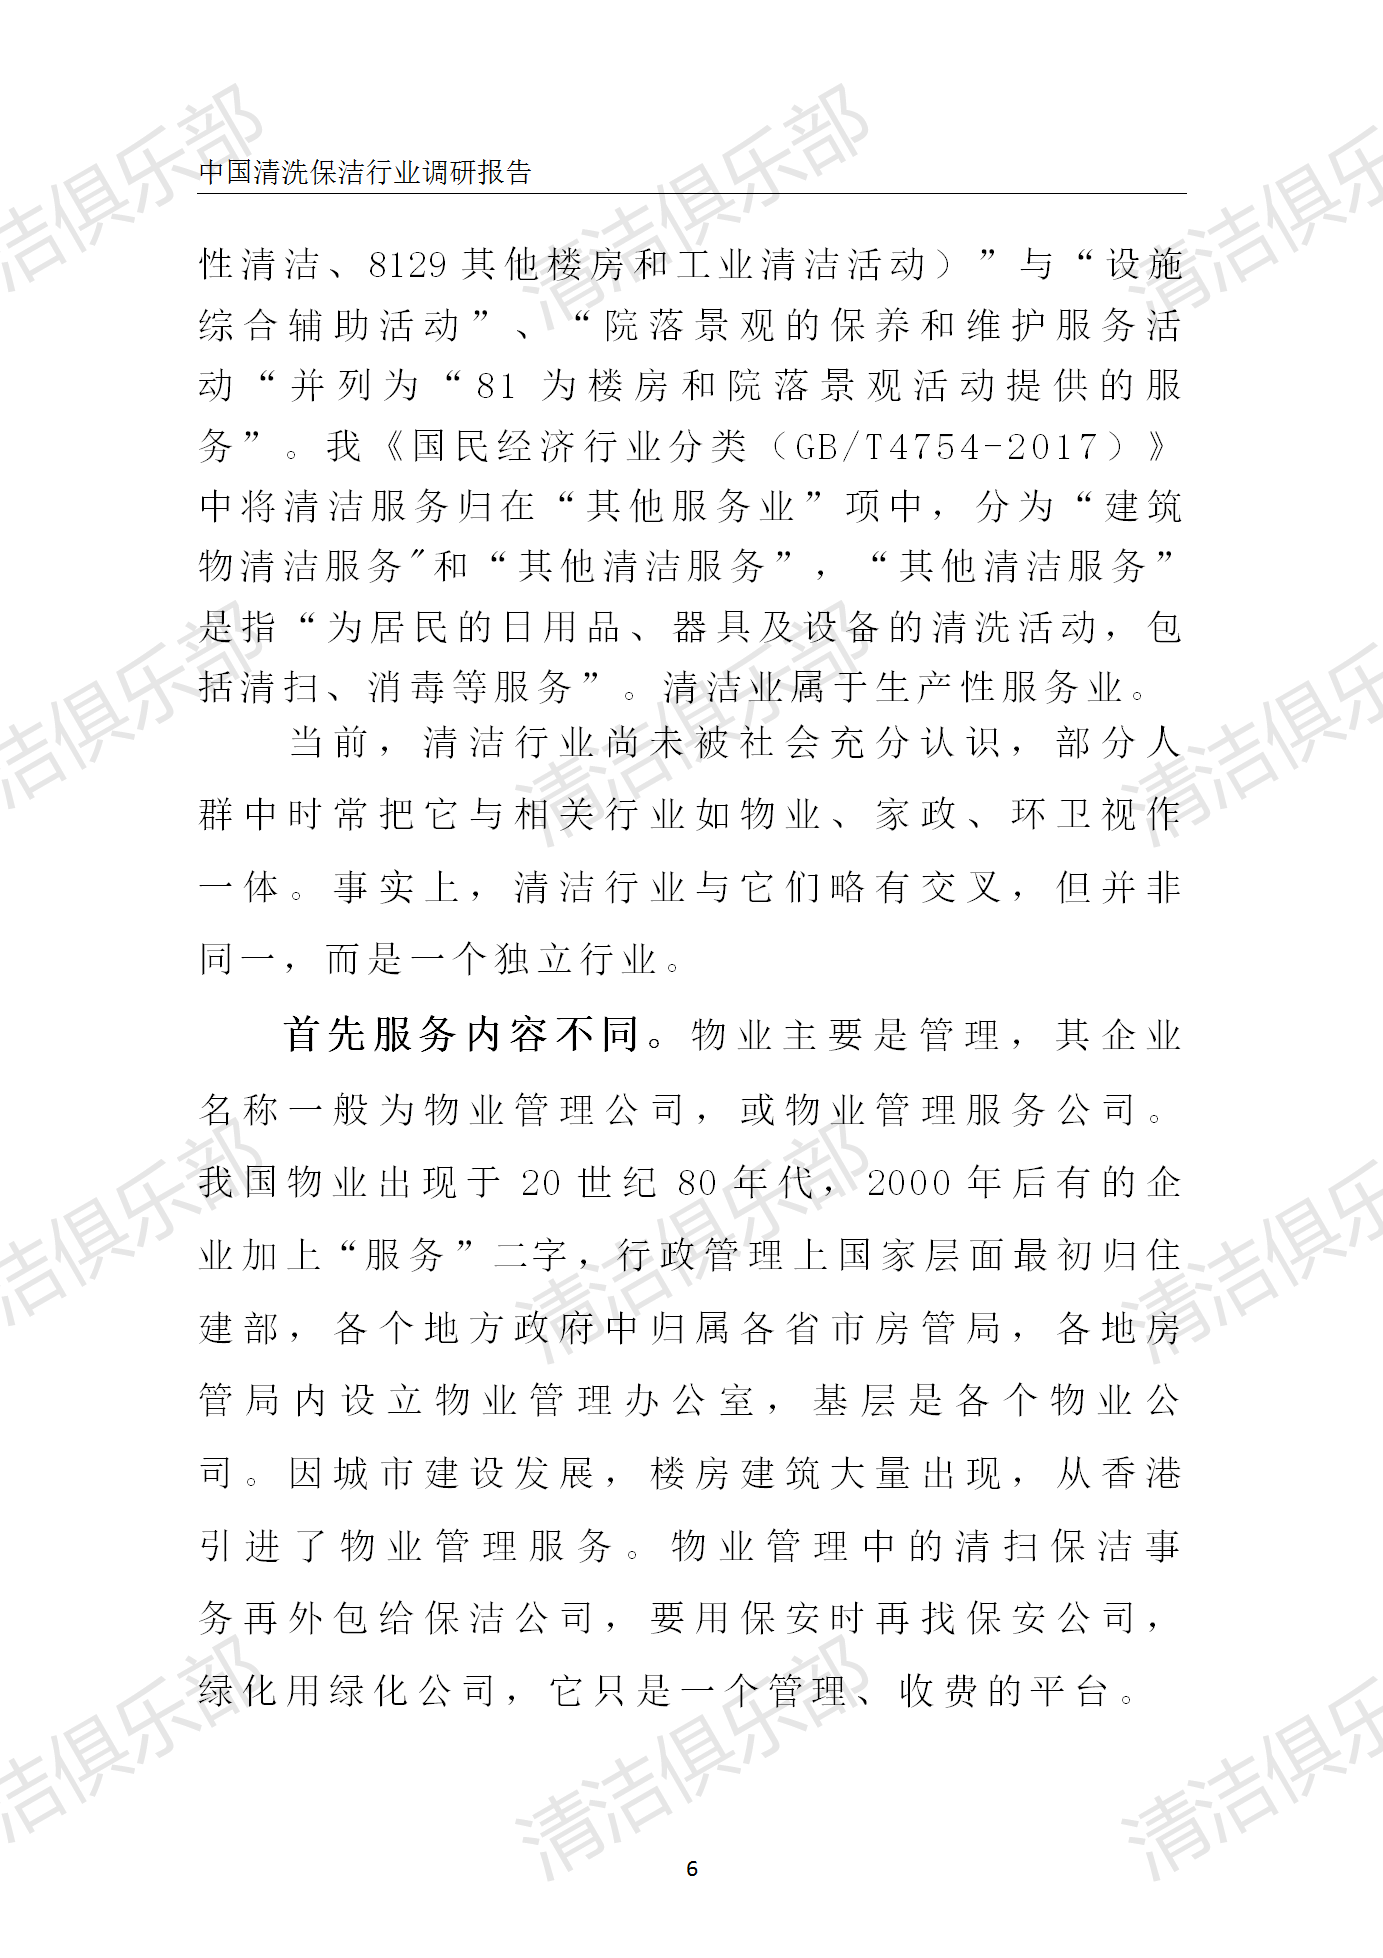 中国清洗保洁行业调研报告排版_16.png